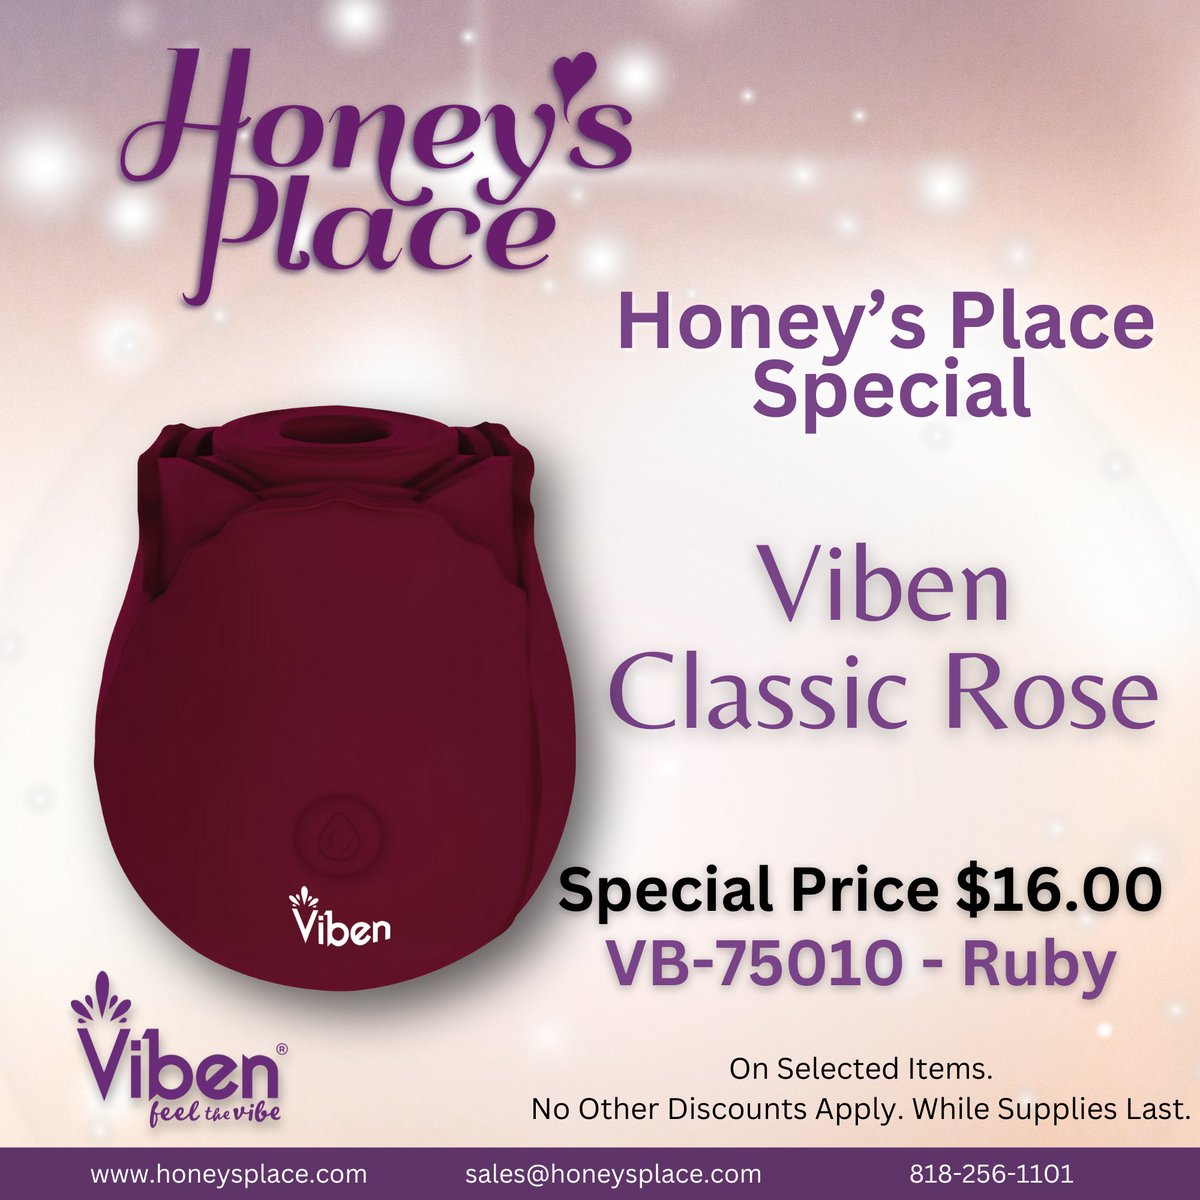 Check out this Honey's Place special VibenToys Classic Rose 🌹 bit.ly/49pT2LU #HoneysPlace #specialoffer #VibenToys